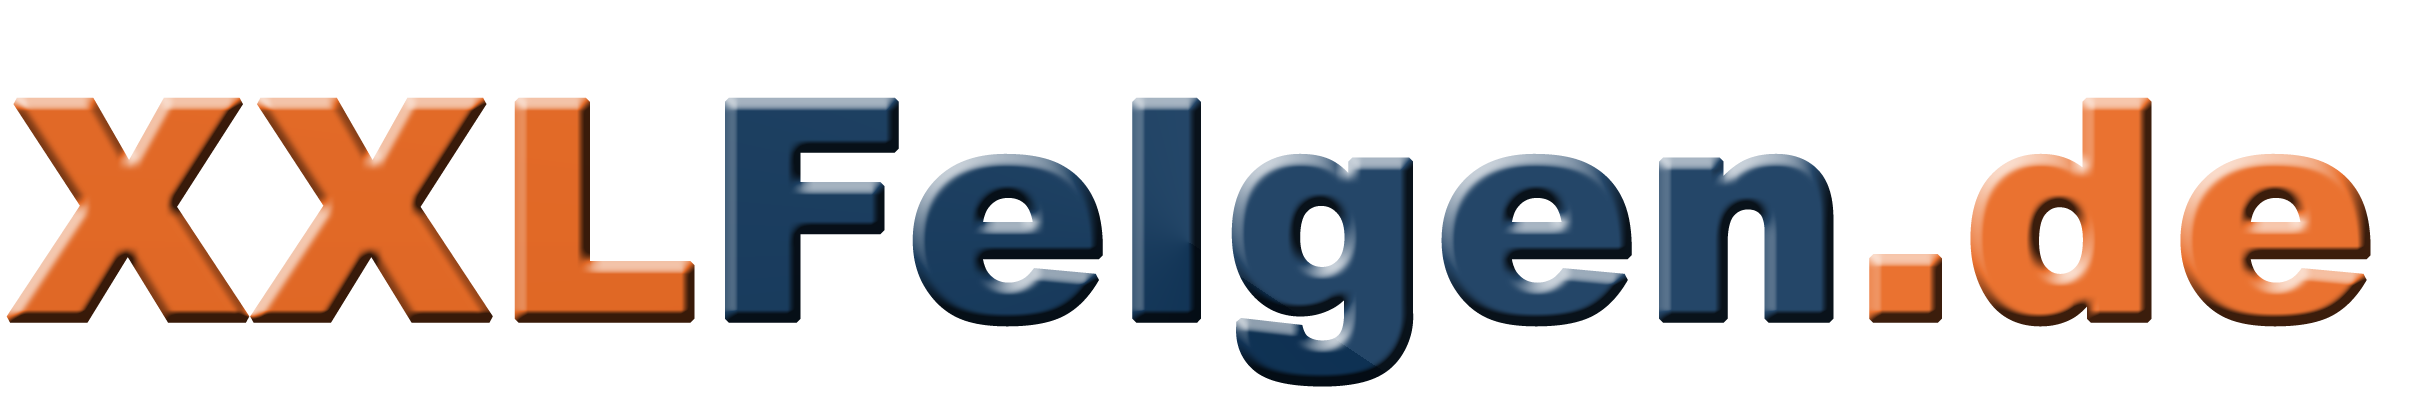 XXL-Felgen.de - DER Felgen-Online-Shop - Alufelgen, Reifen, Kompletträder